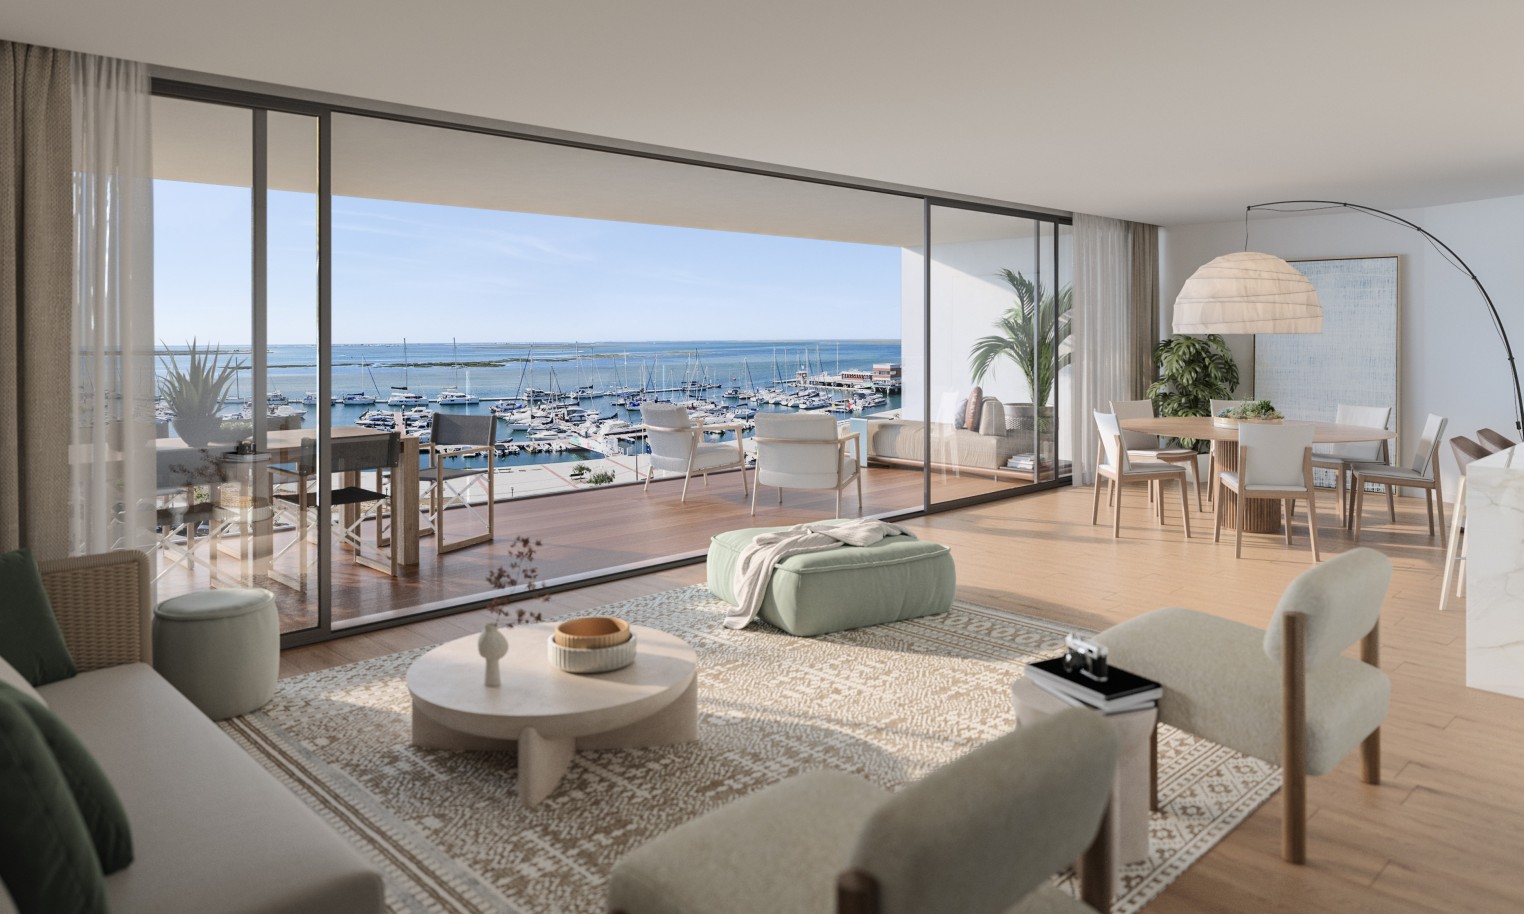 Pisos nuevos con vistas al mar, 1, 2 y 3 dormitorios, en venta en Olhão, Algarve_243954